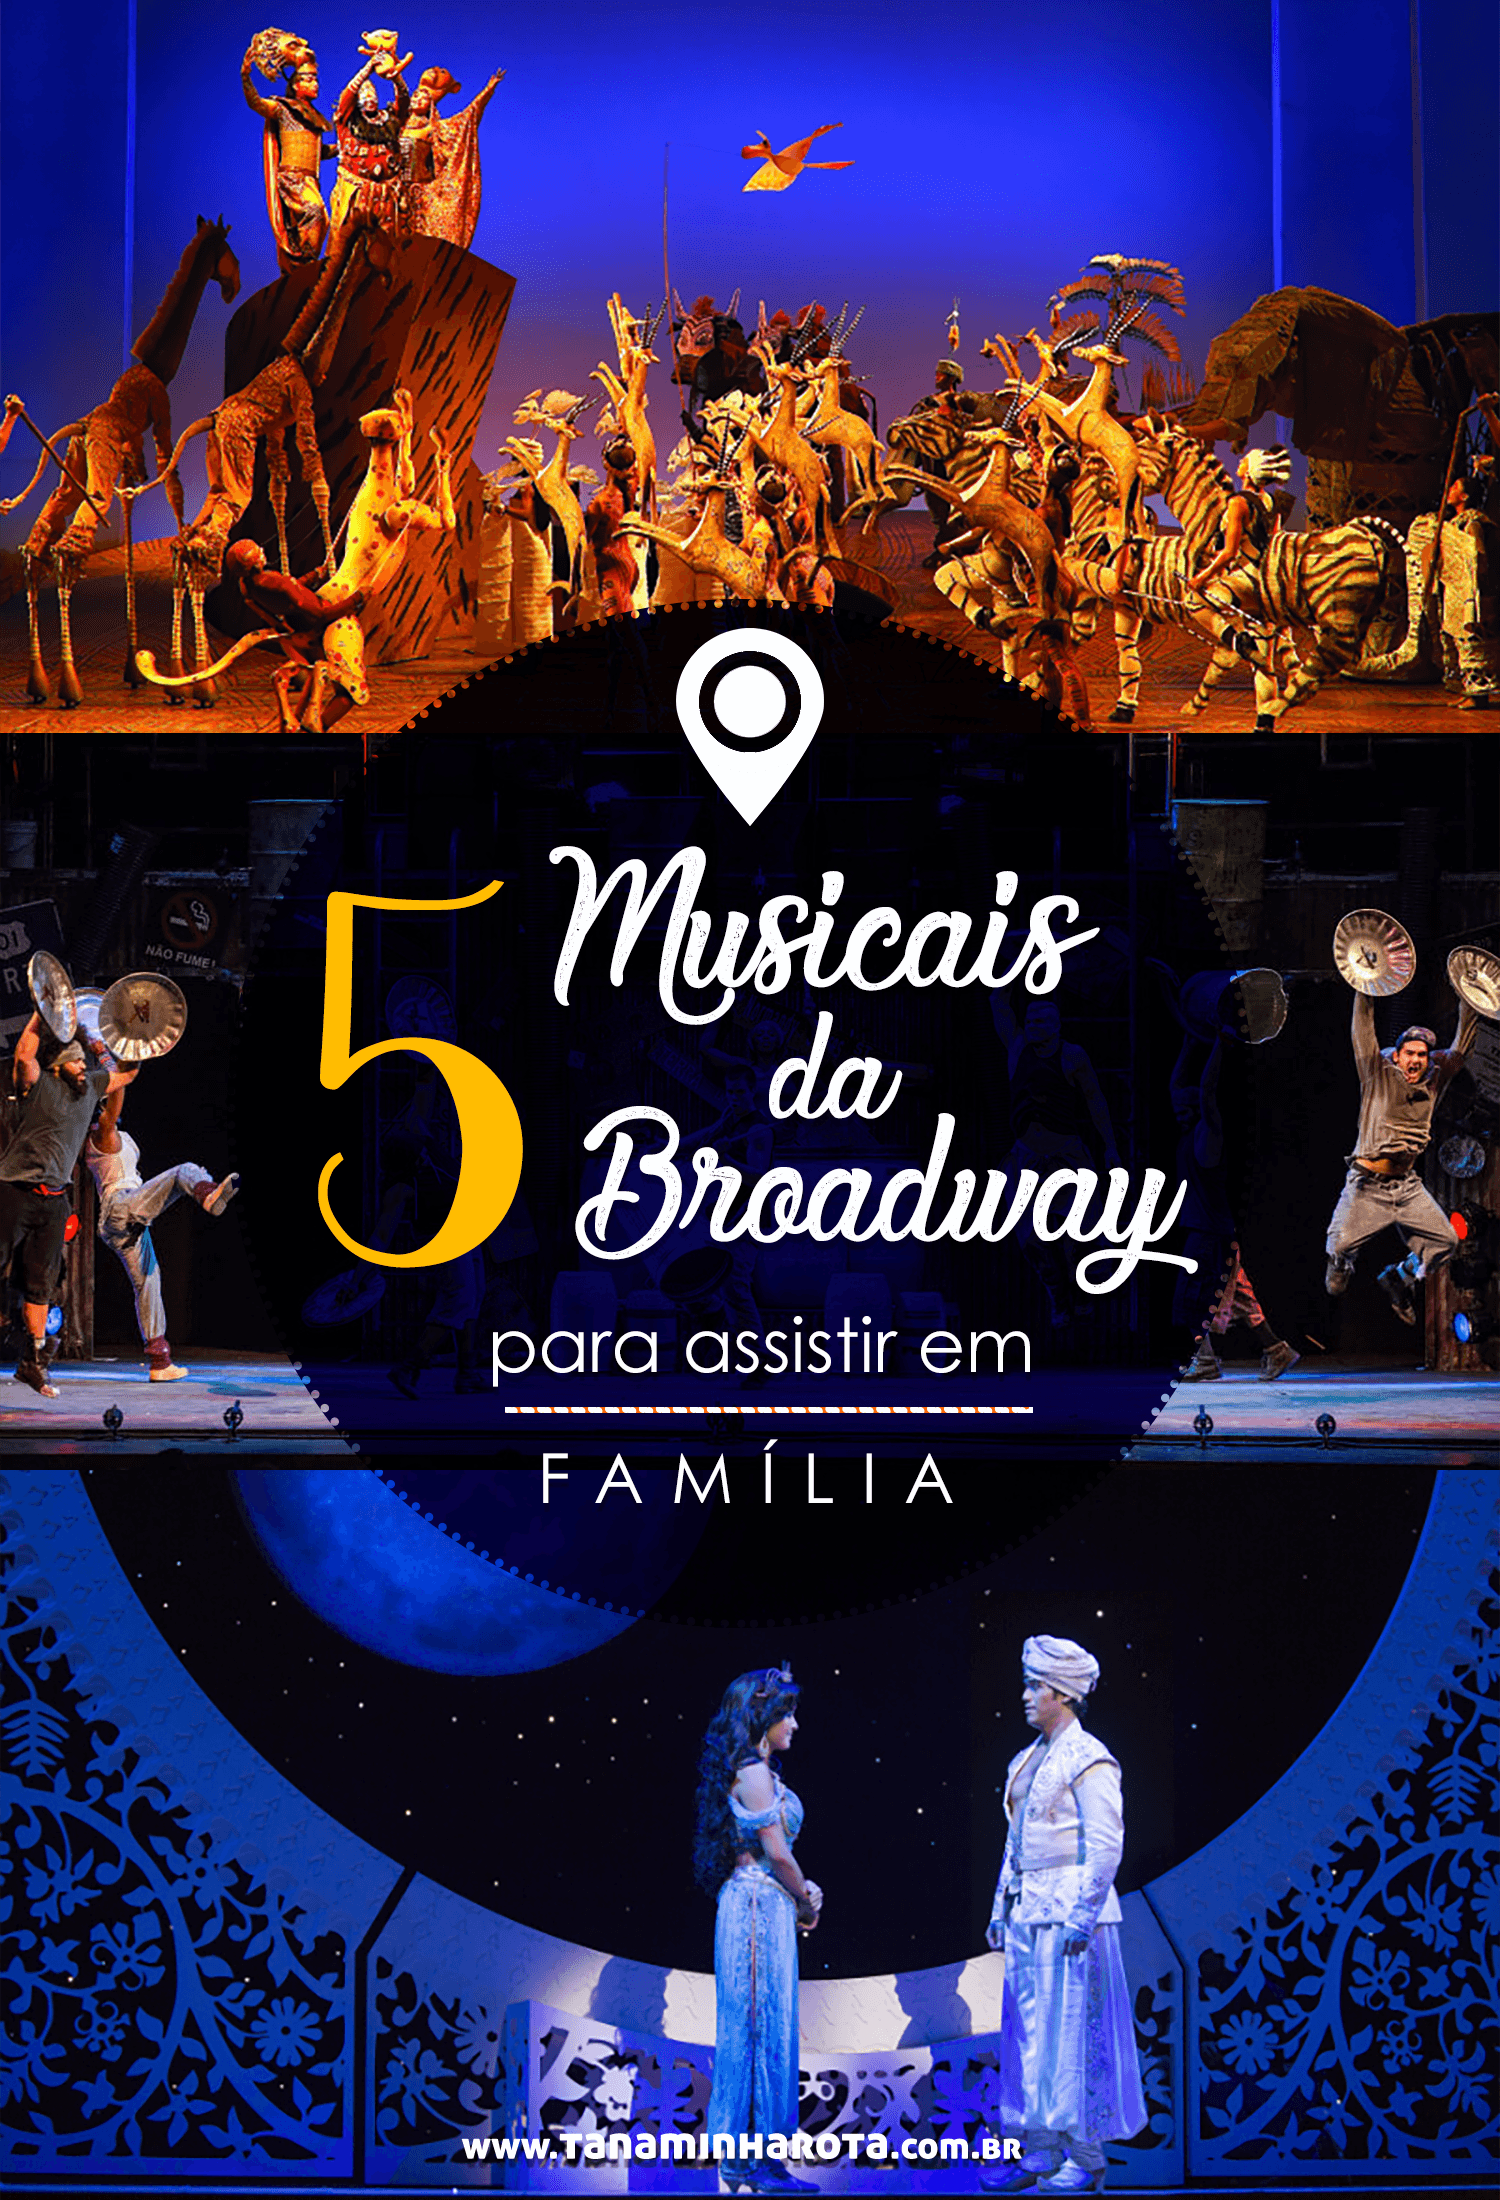 Vai visitar Nova York com a família e quer assistir a um musical da Broadway? Então leia esse post e veja sugestões de 5 espetáculos que vão agradar todas as idades! #broadway #novayork #estadosunidos #viagem #musical